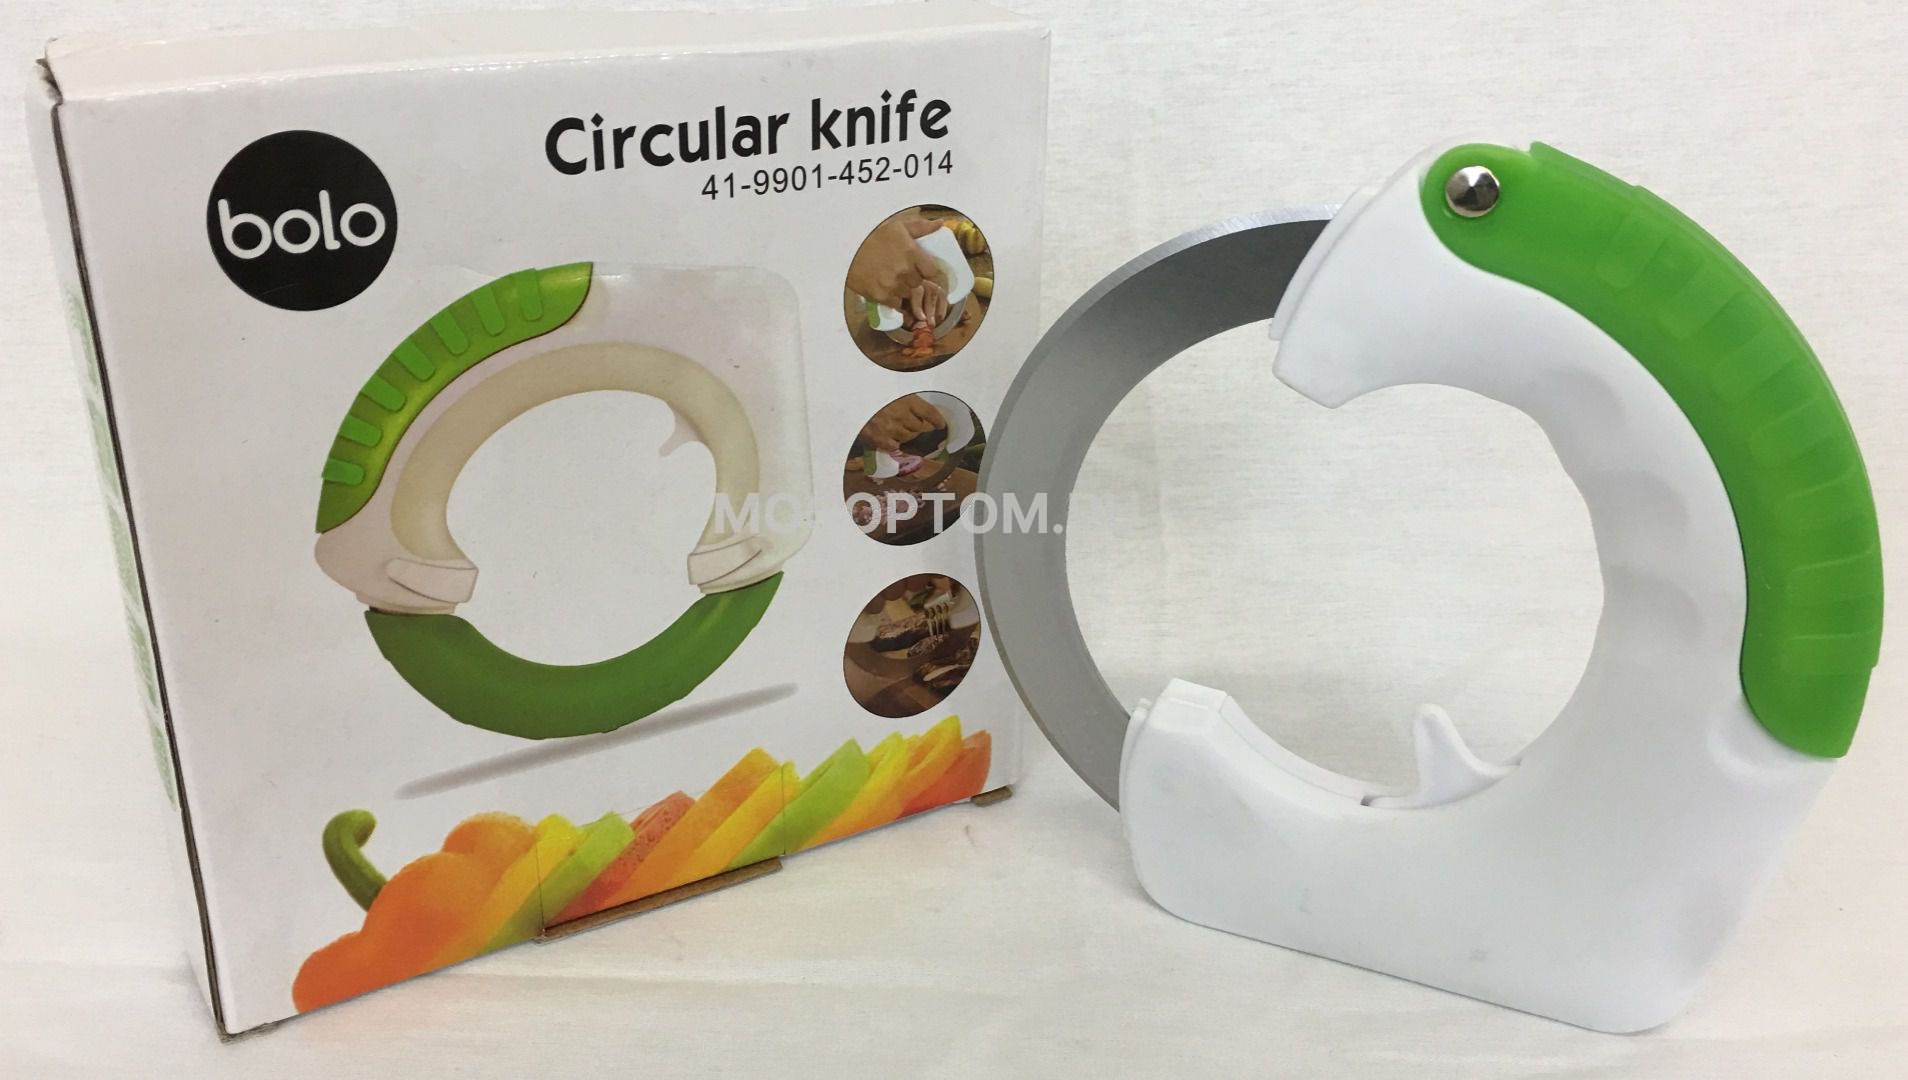 Нож для овощей Circular Knife Bolo оптом  - Фото №3